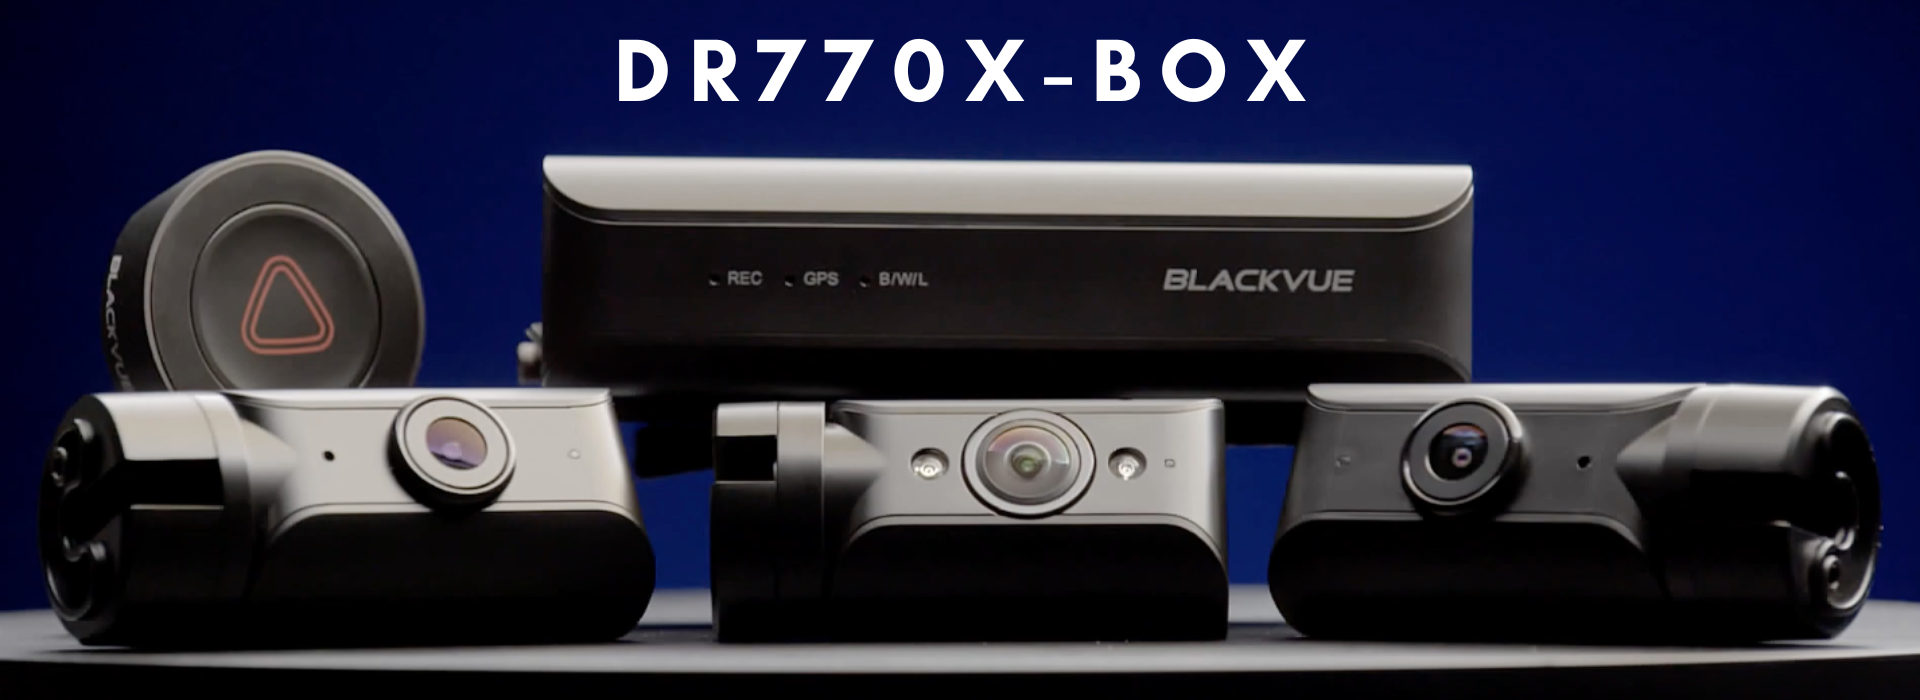 BlackVue DR770X-BOX | The DR770X-BOX Main Banner